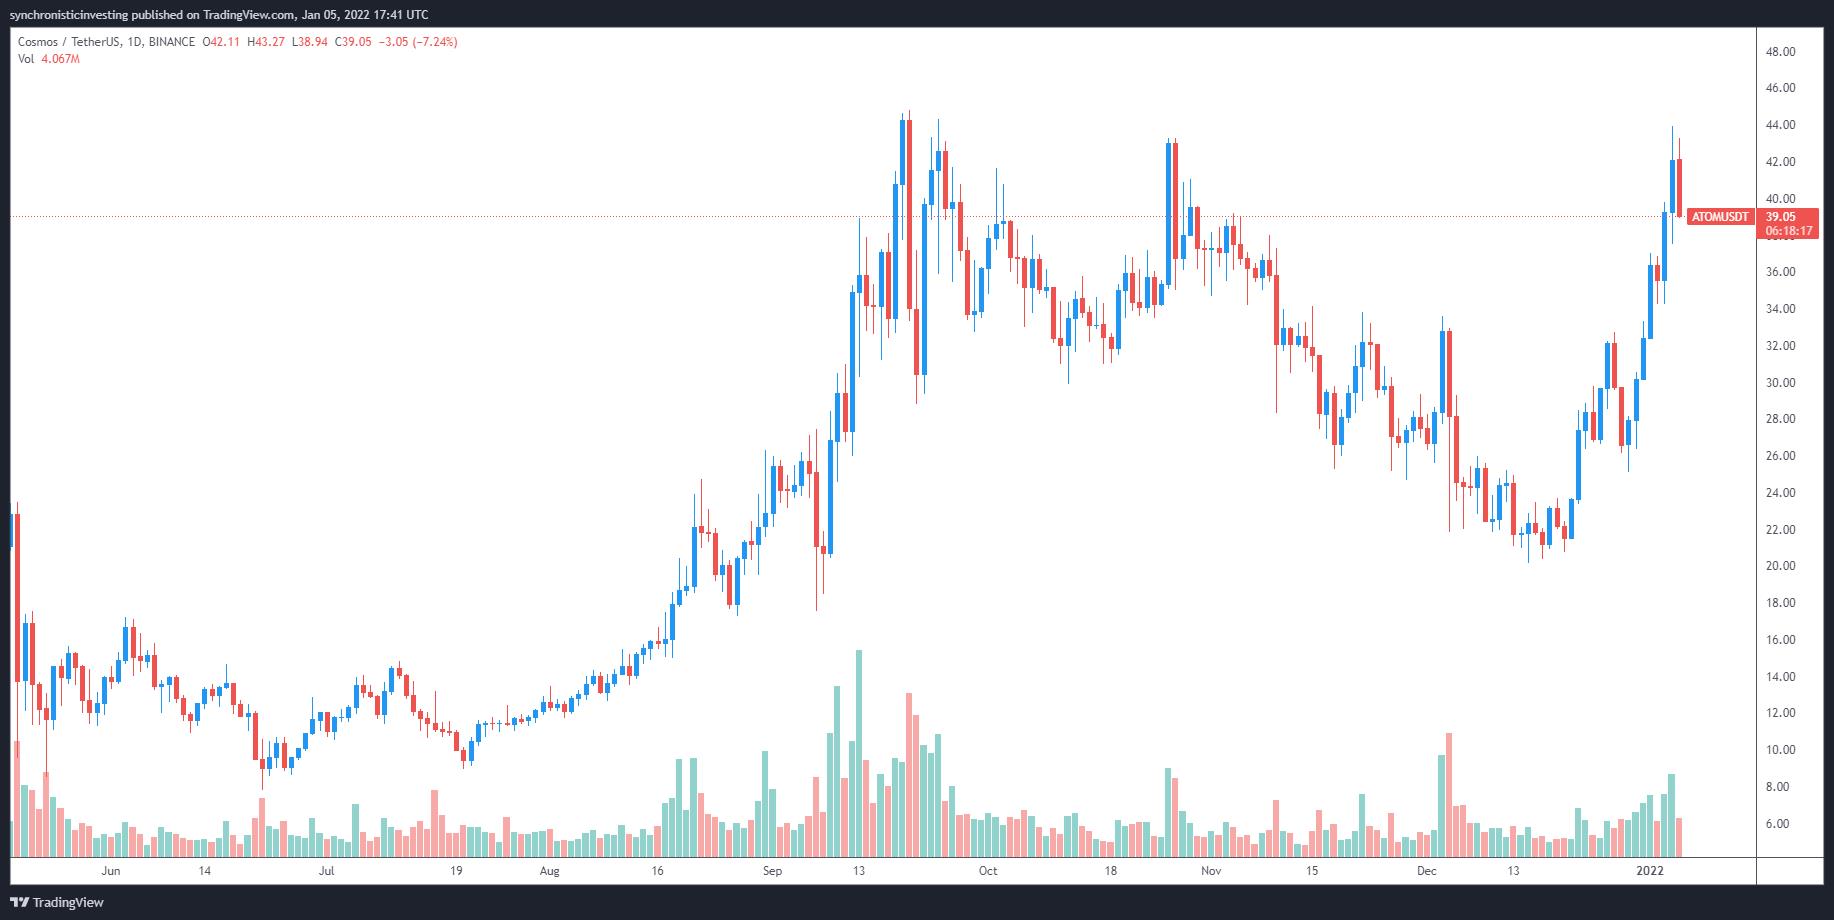 Giá Bitcoin hôm nay 6/1: Bitcoin giảm mạnh, thị trường chao đảo - Ảnh 4.